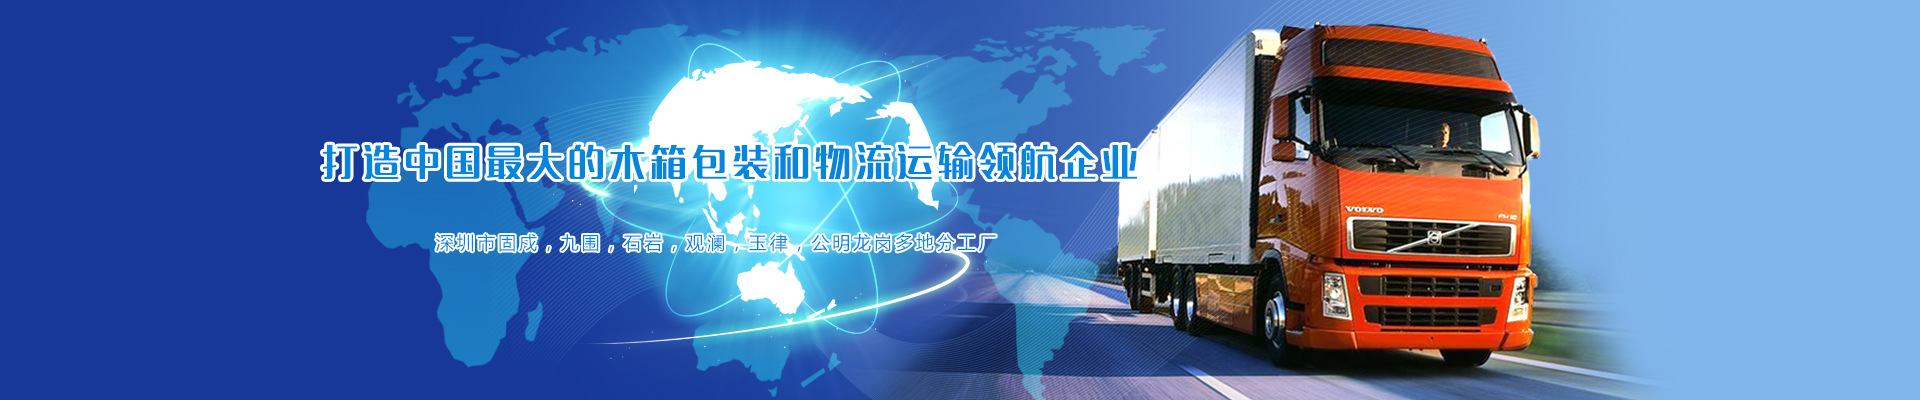 打造中国最大的木箱包装和物流运送领航企业